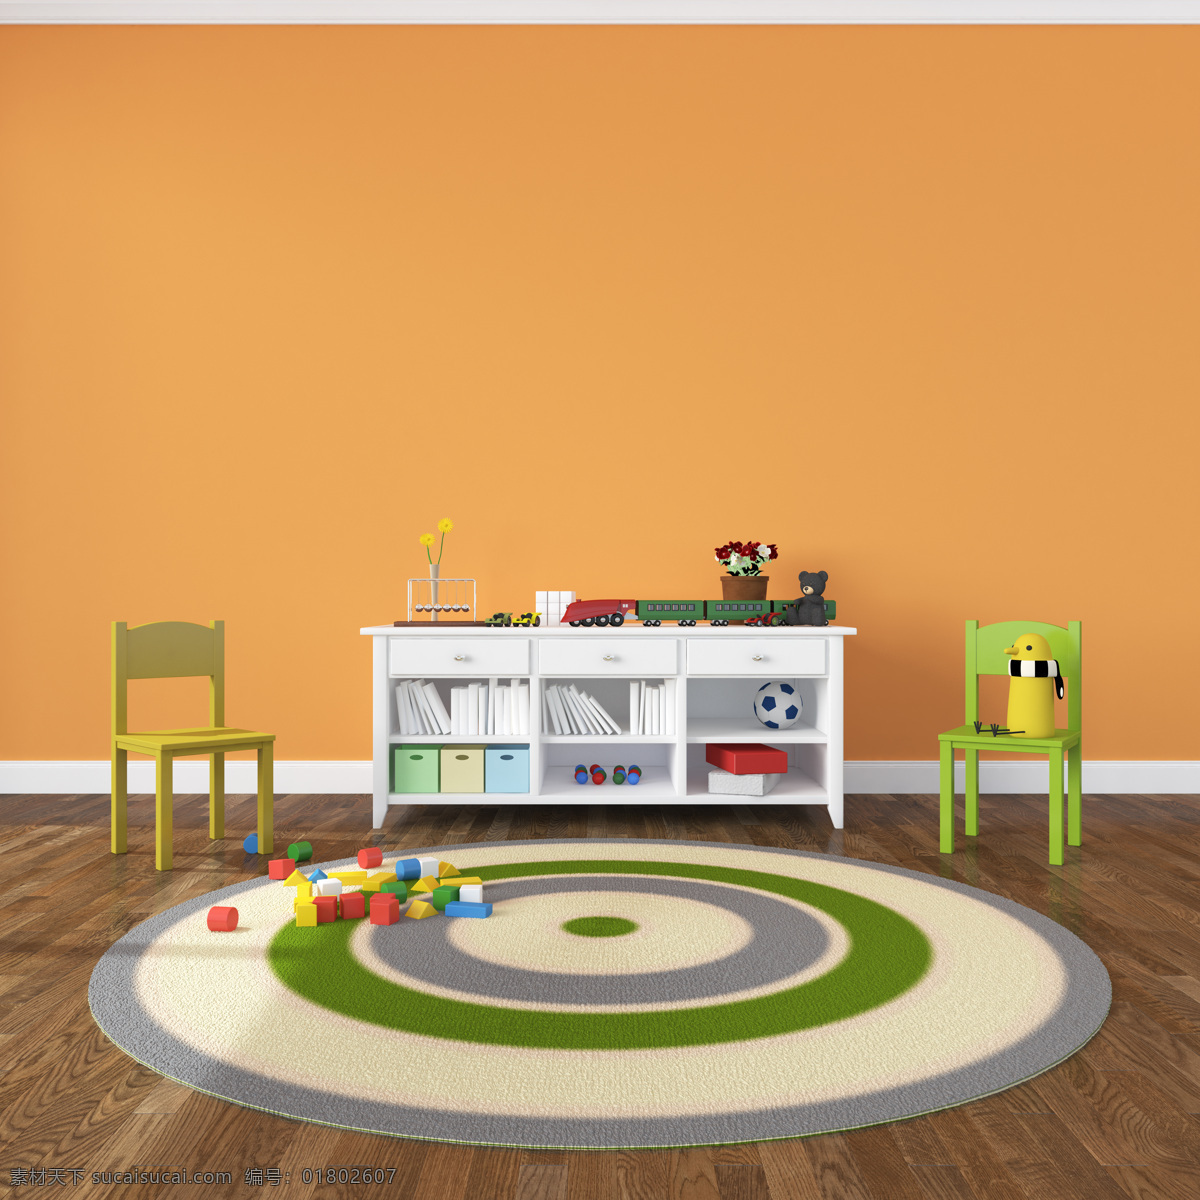 儿童房 房间 地毯 家具 彩色 温馨 可爱 玩具 文具 桌椅 色彩 装饰品 梦幻 卡通 童话 环境设计 室内设计